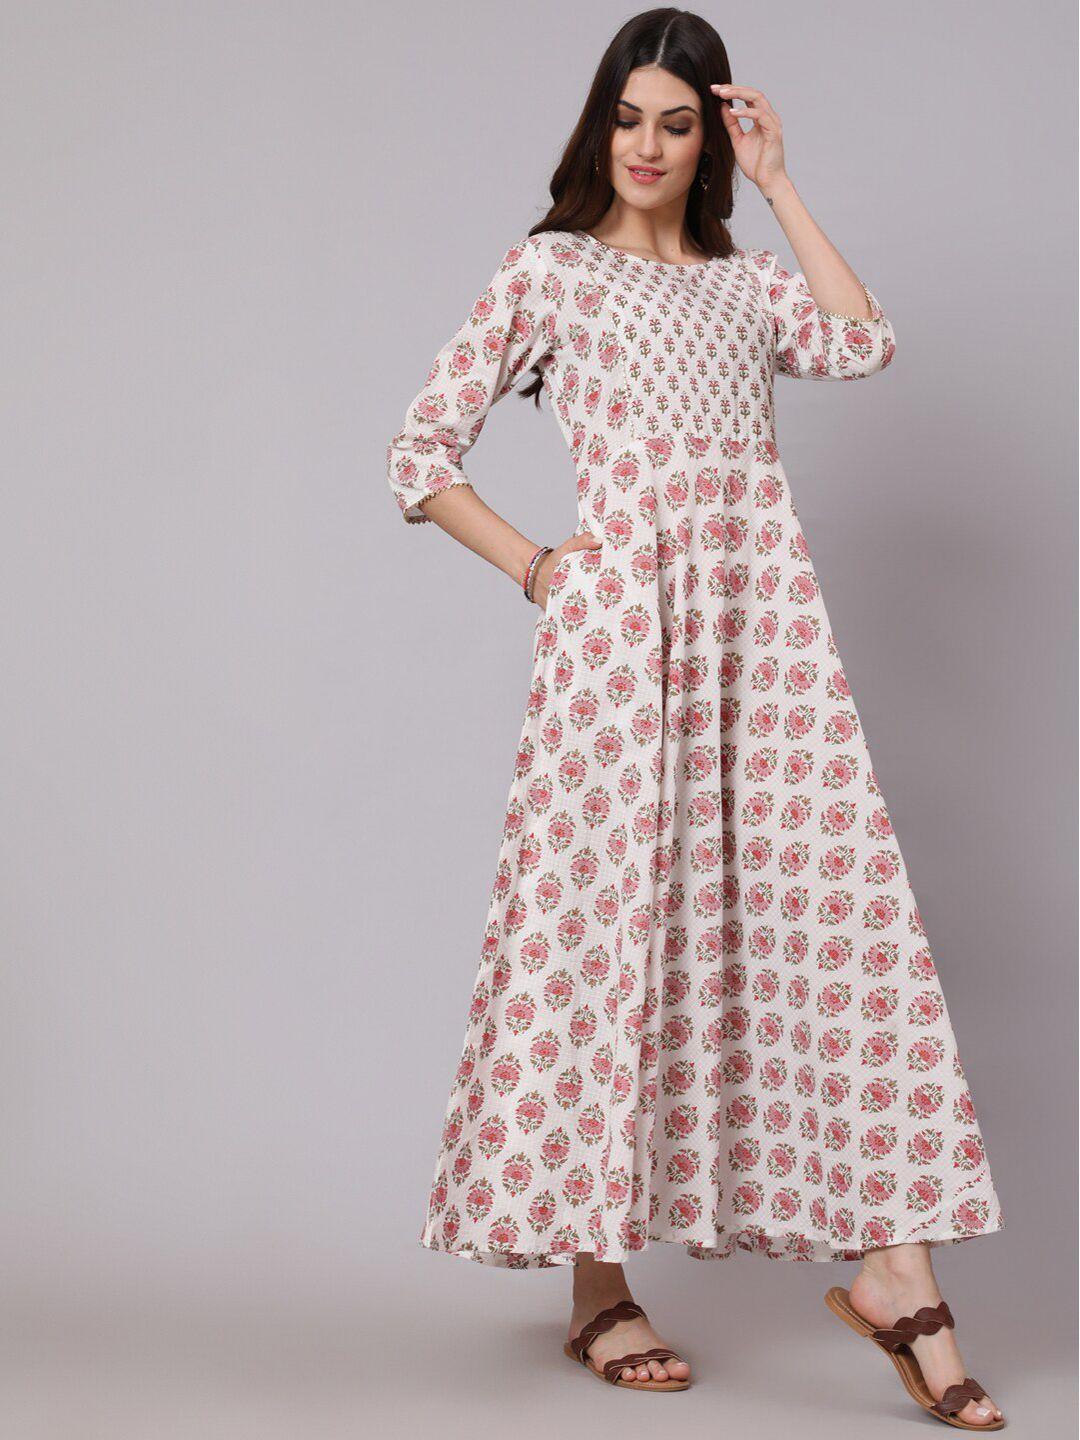 nayo-white-&-pink-ethnic-motifs-ethnic-maxi-dress